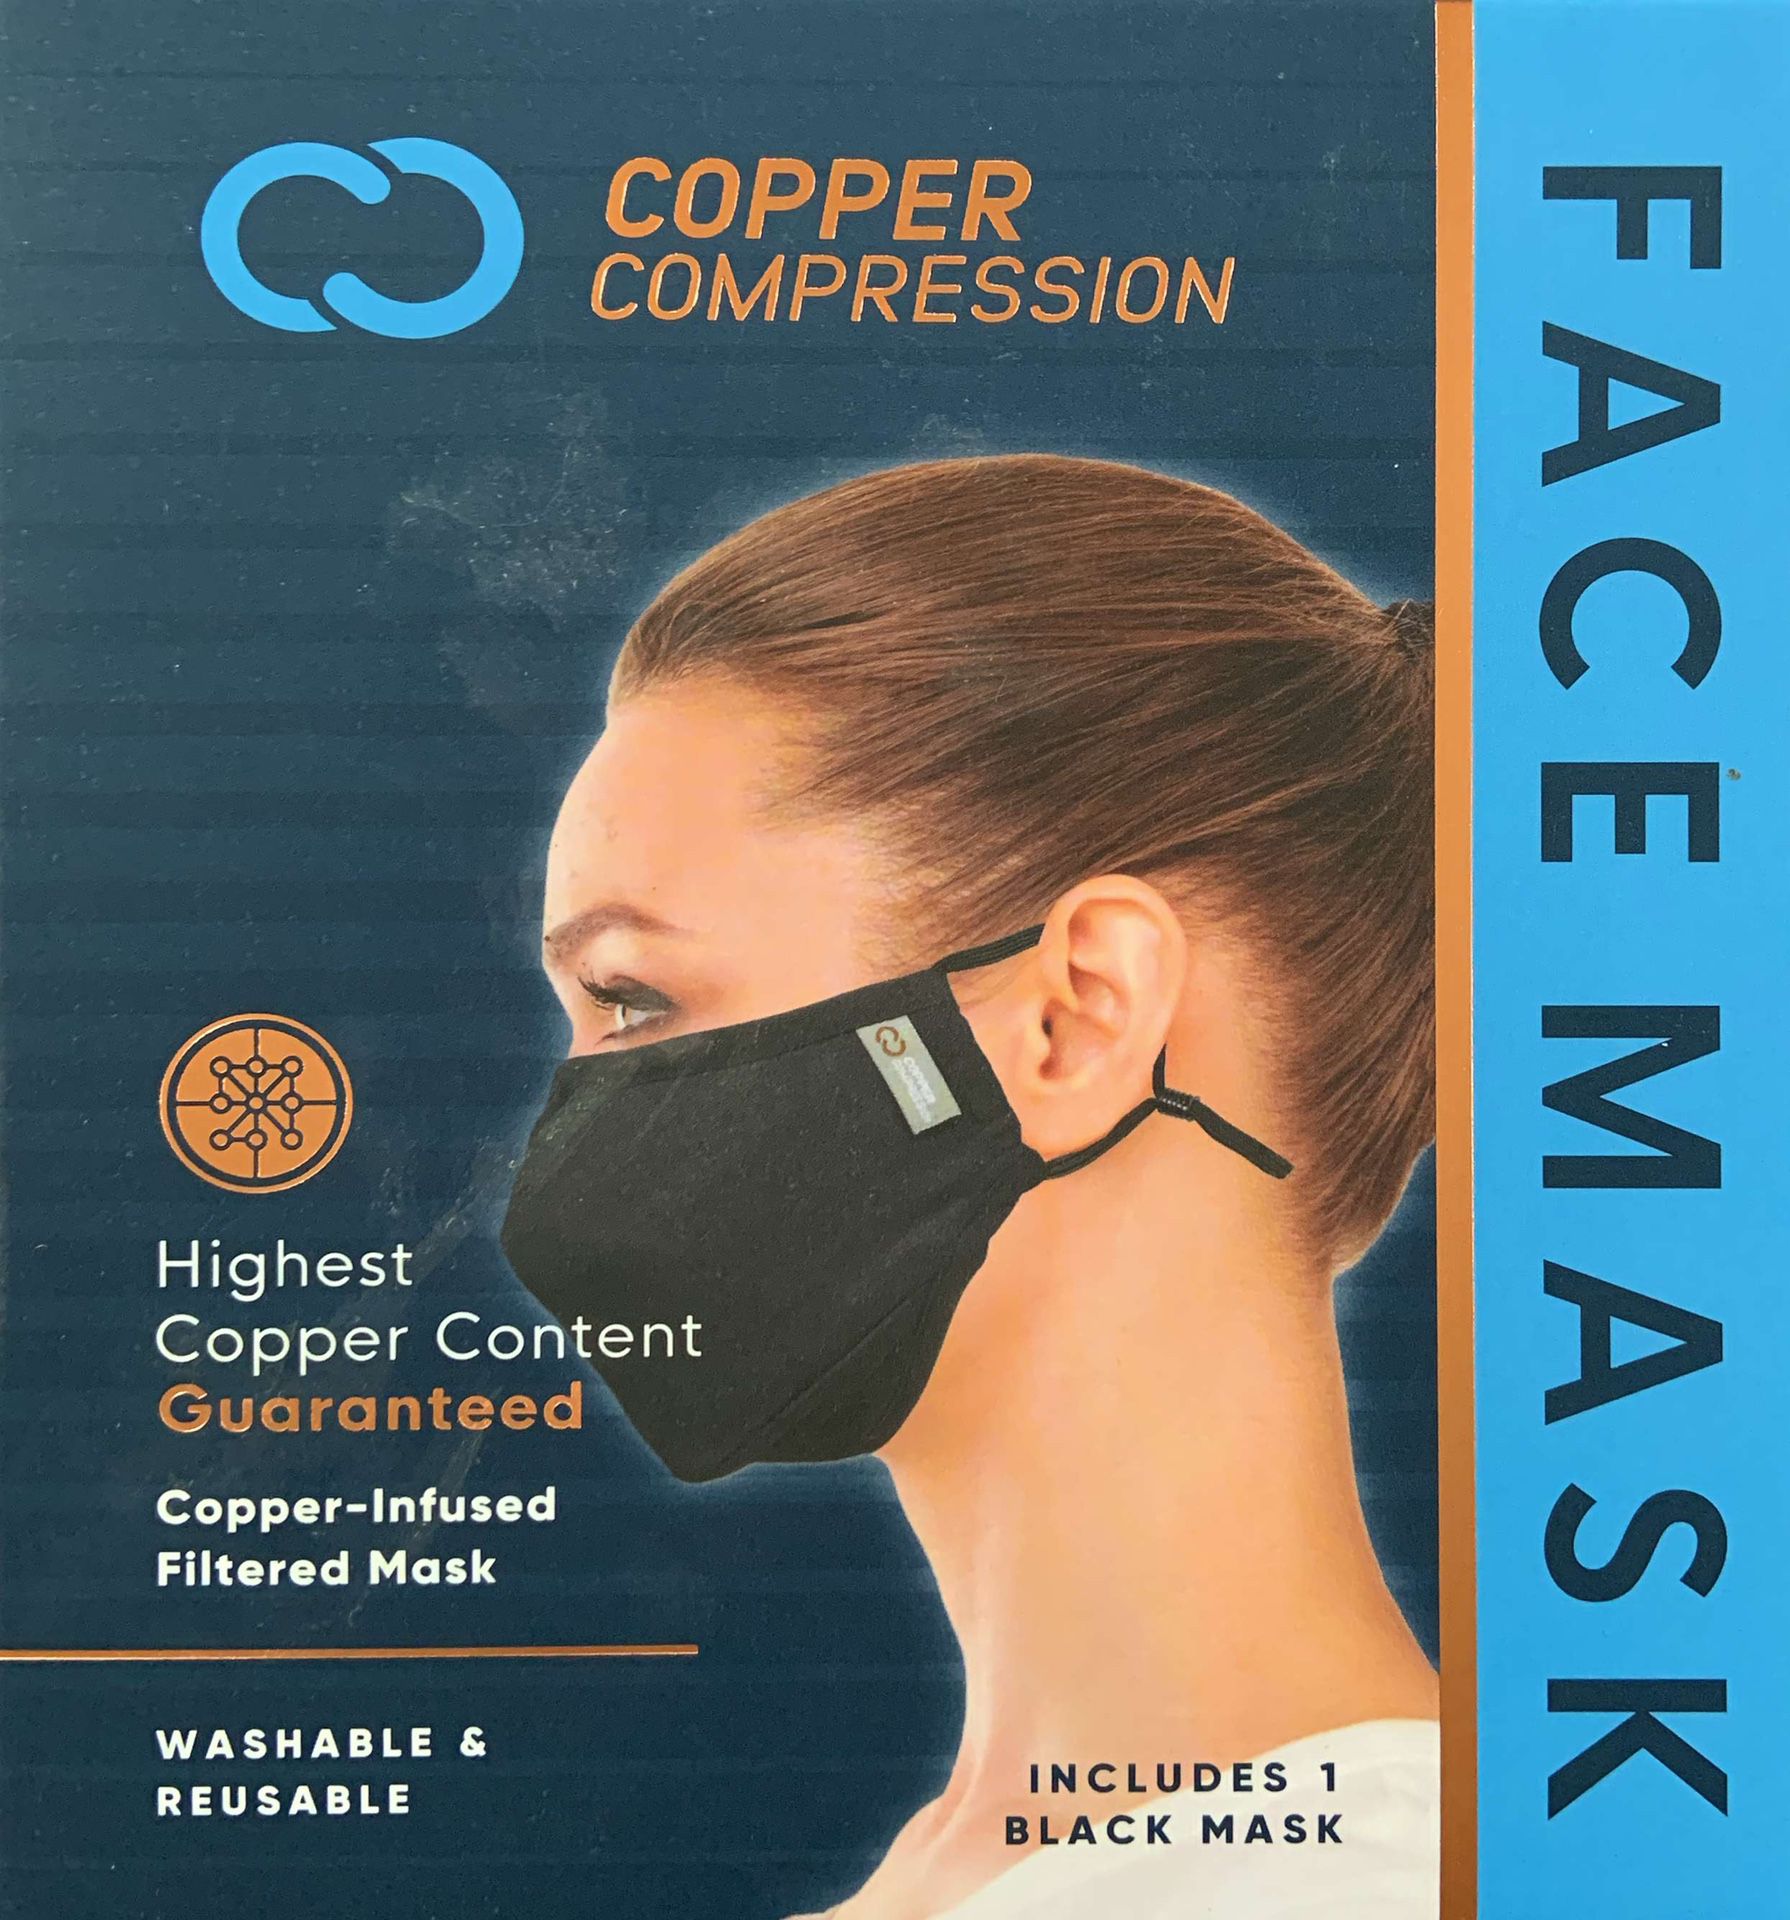 New 2 Copper Compression Face Mask